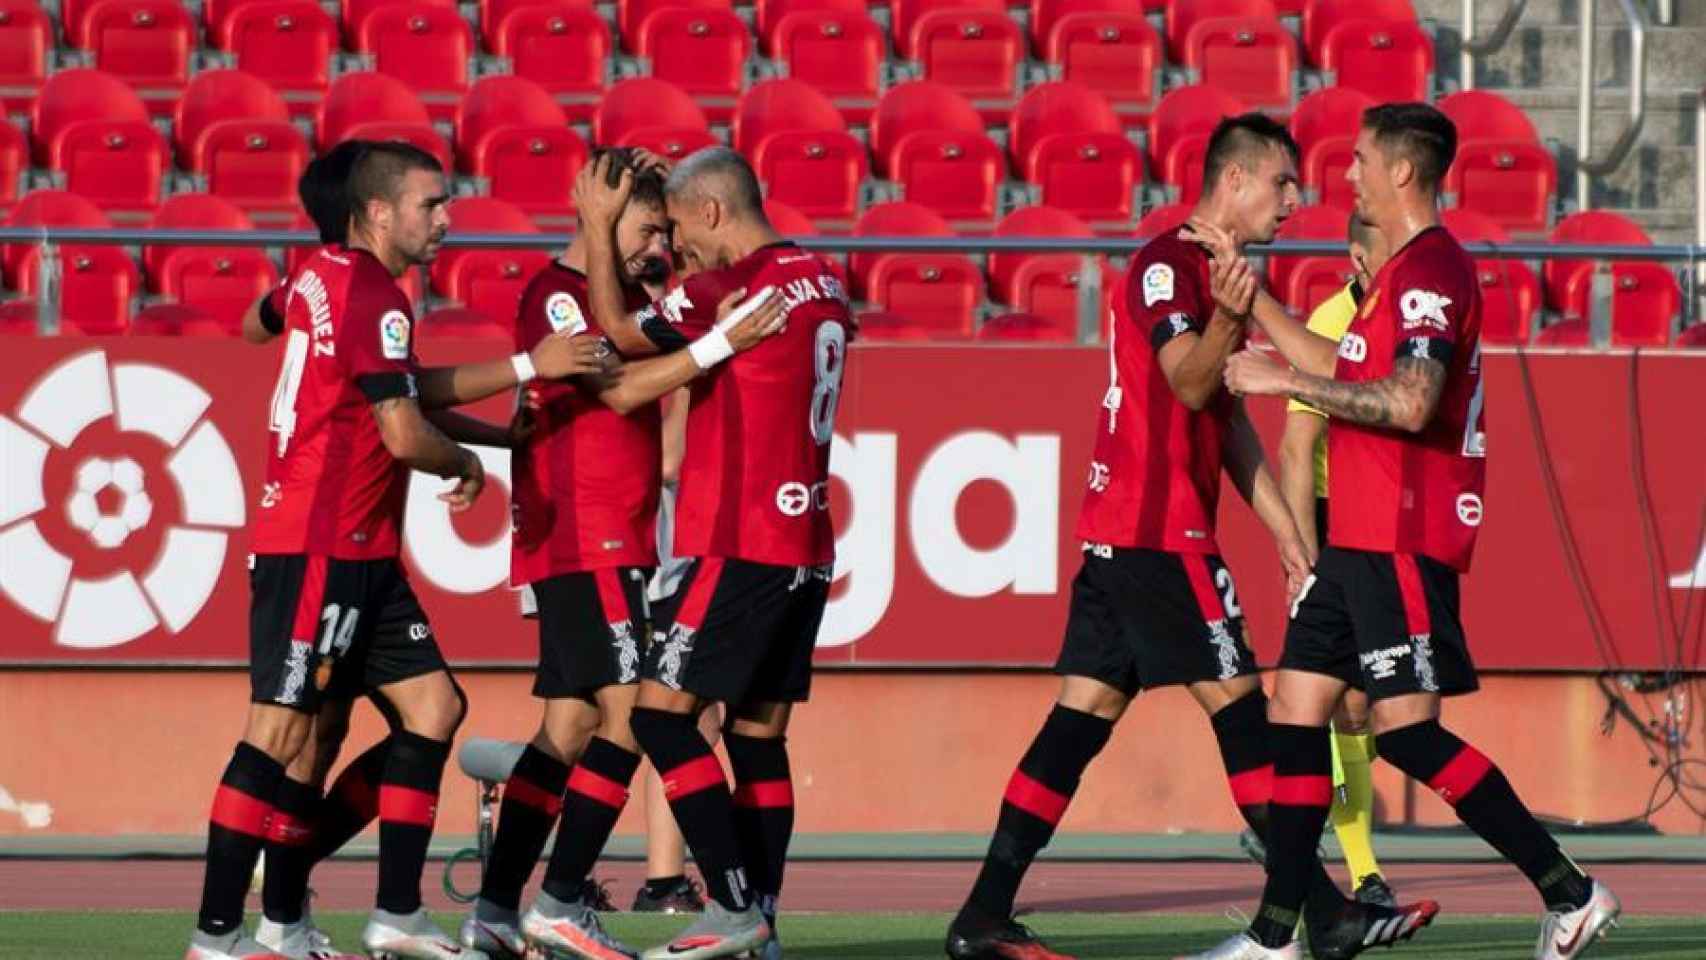 Piña de los jugadores del Mallorca en el gol de Pozo ante el Celta de Vigo en la jornada 33 de La Liga